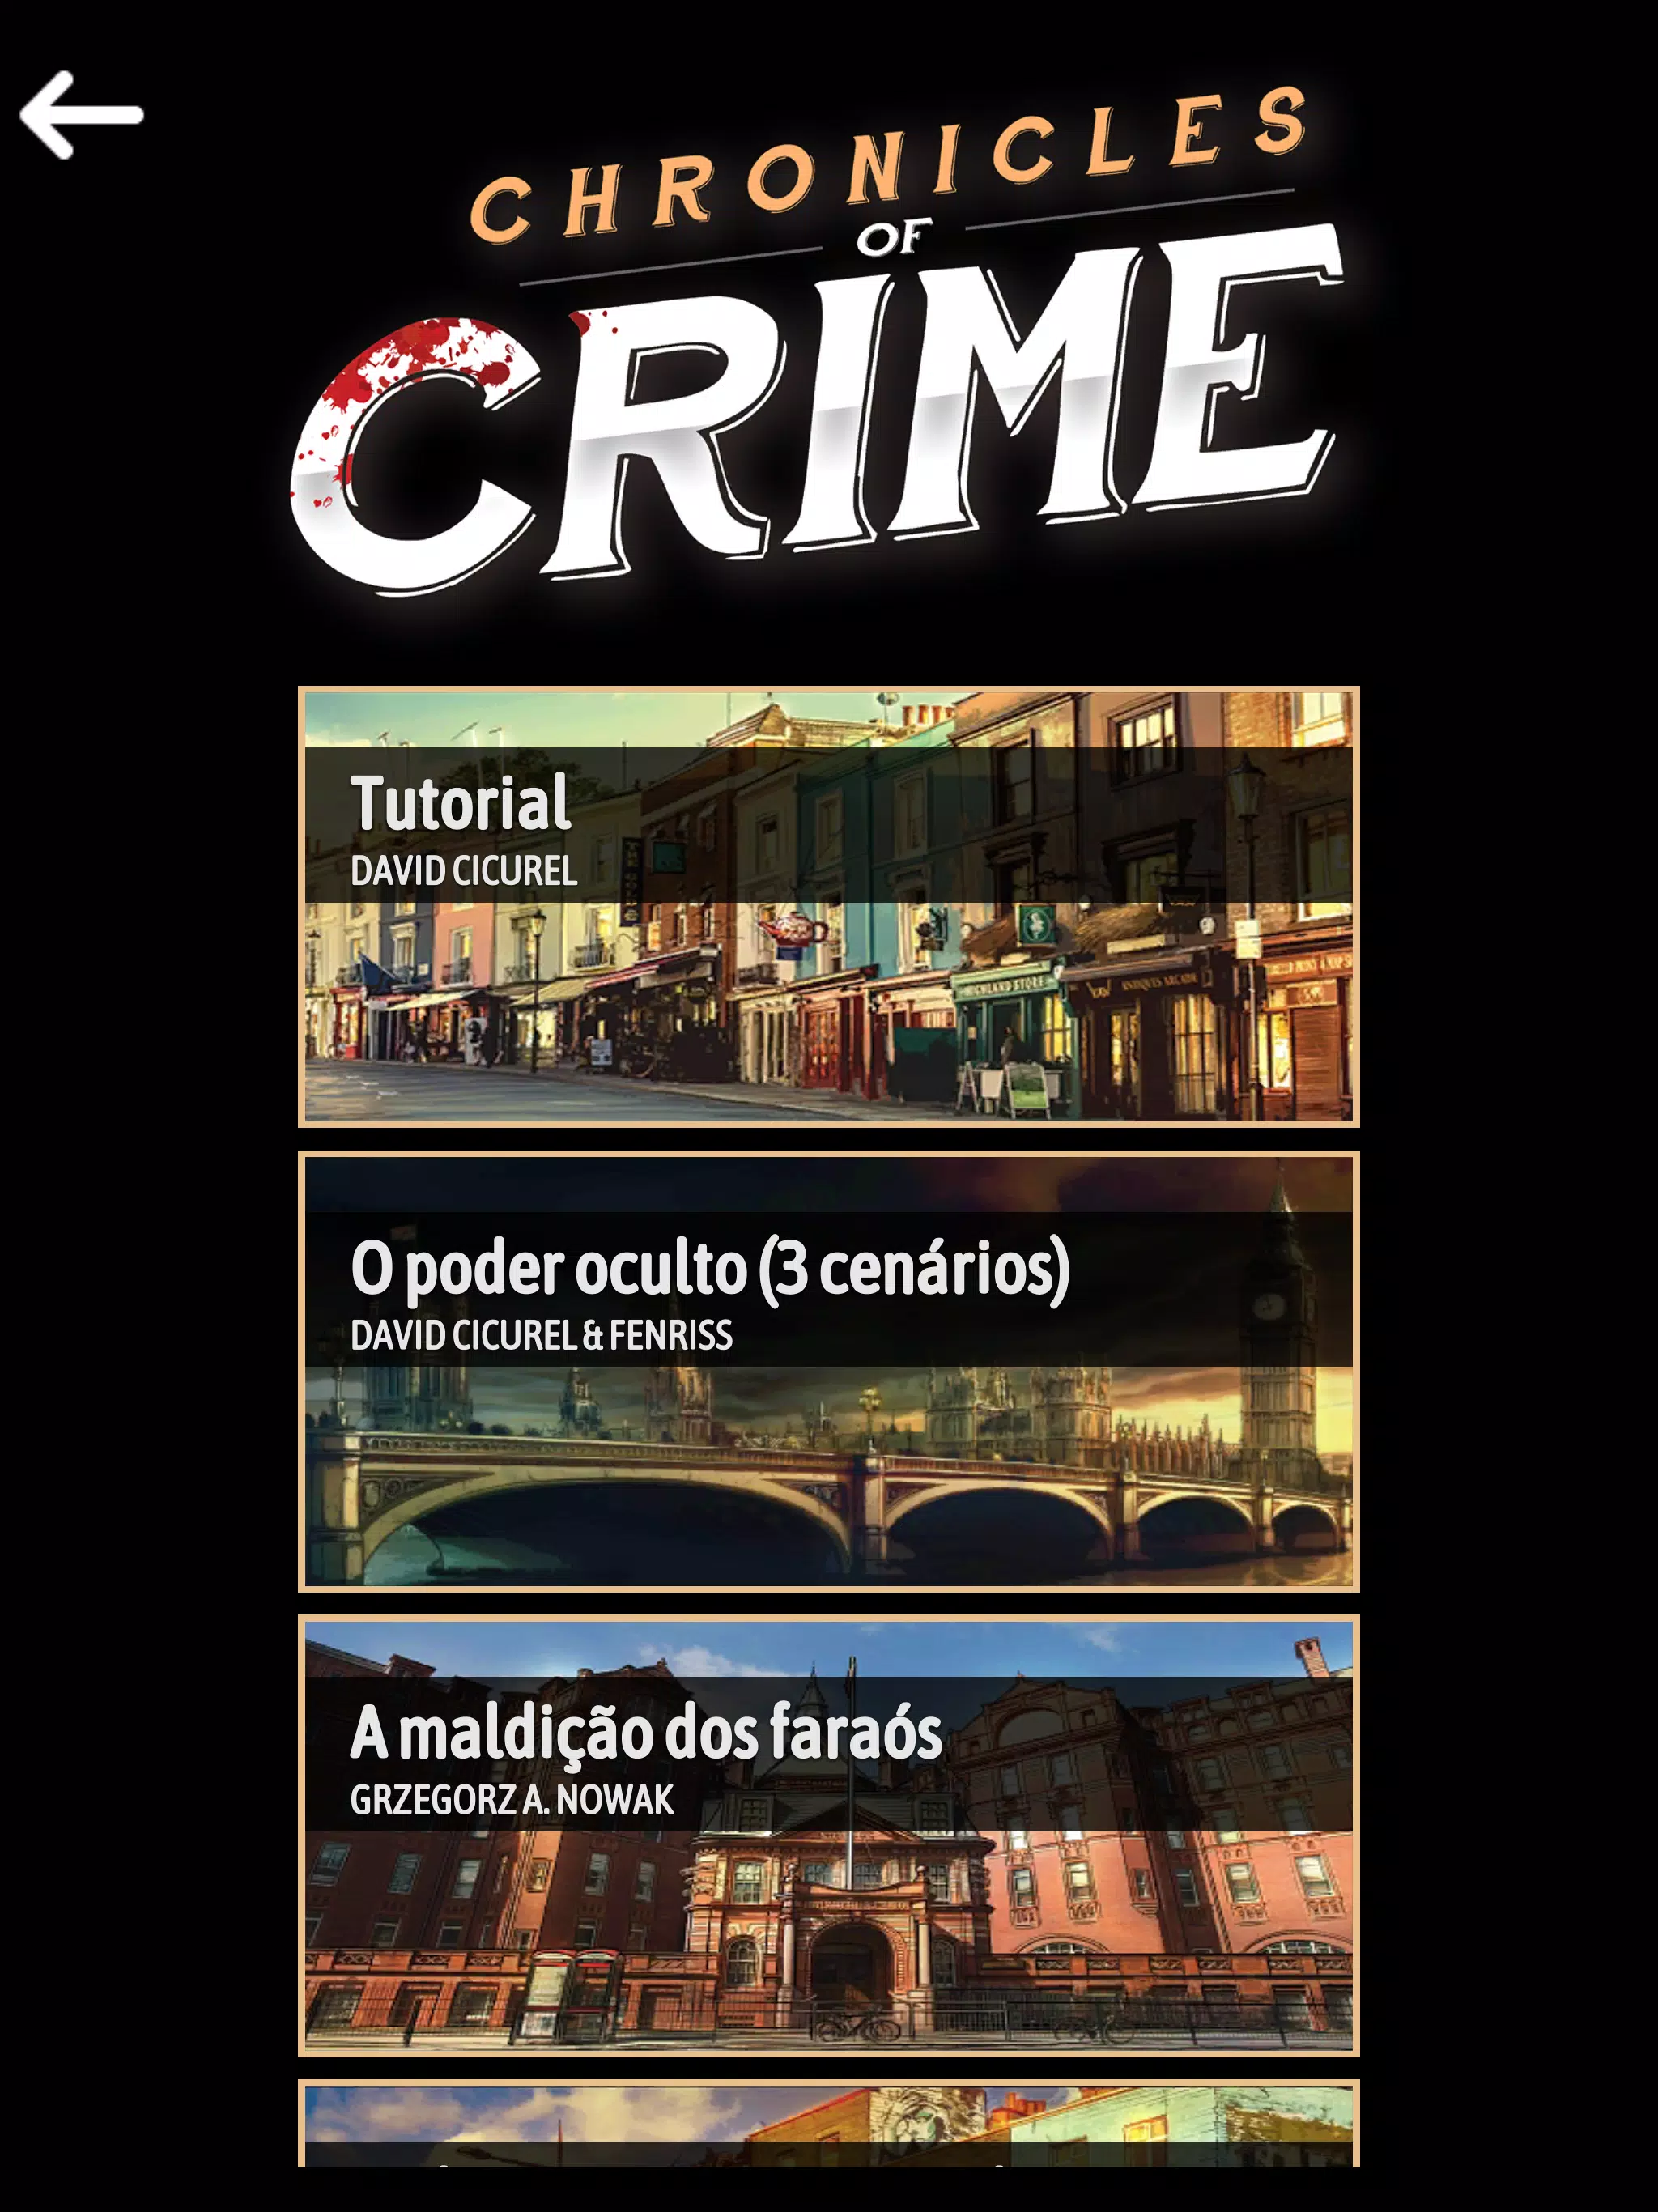 Detetive CrimeBot investigação – Apps no Google Play